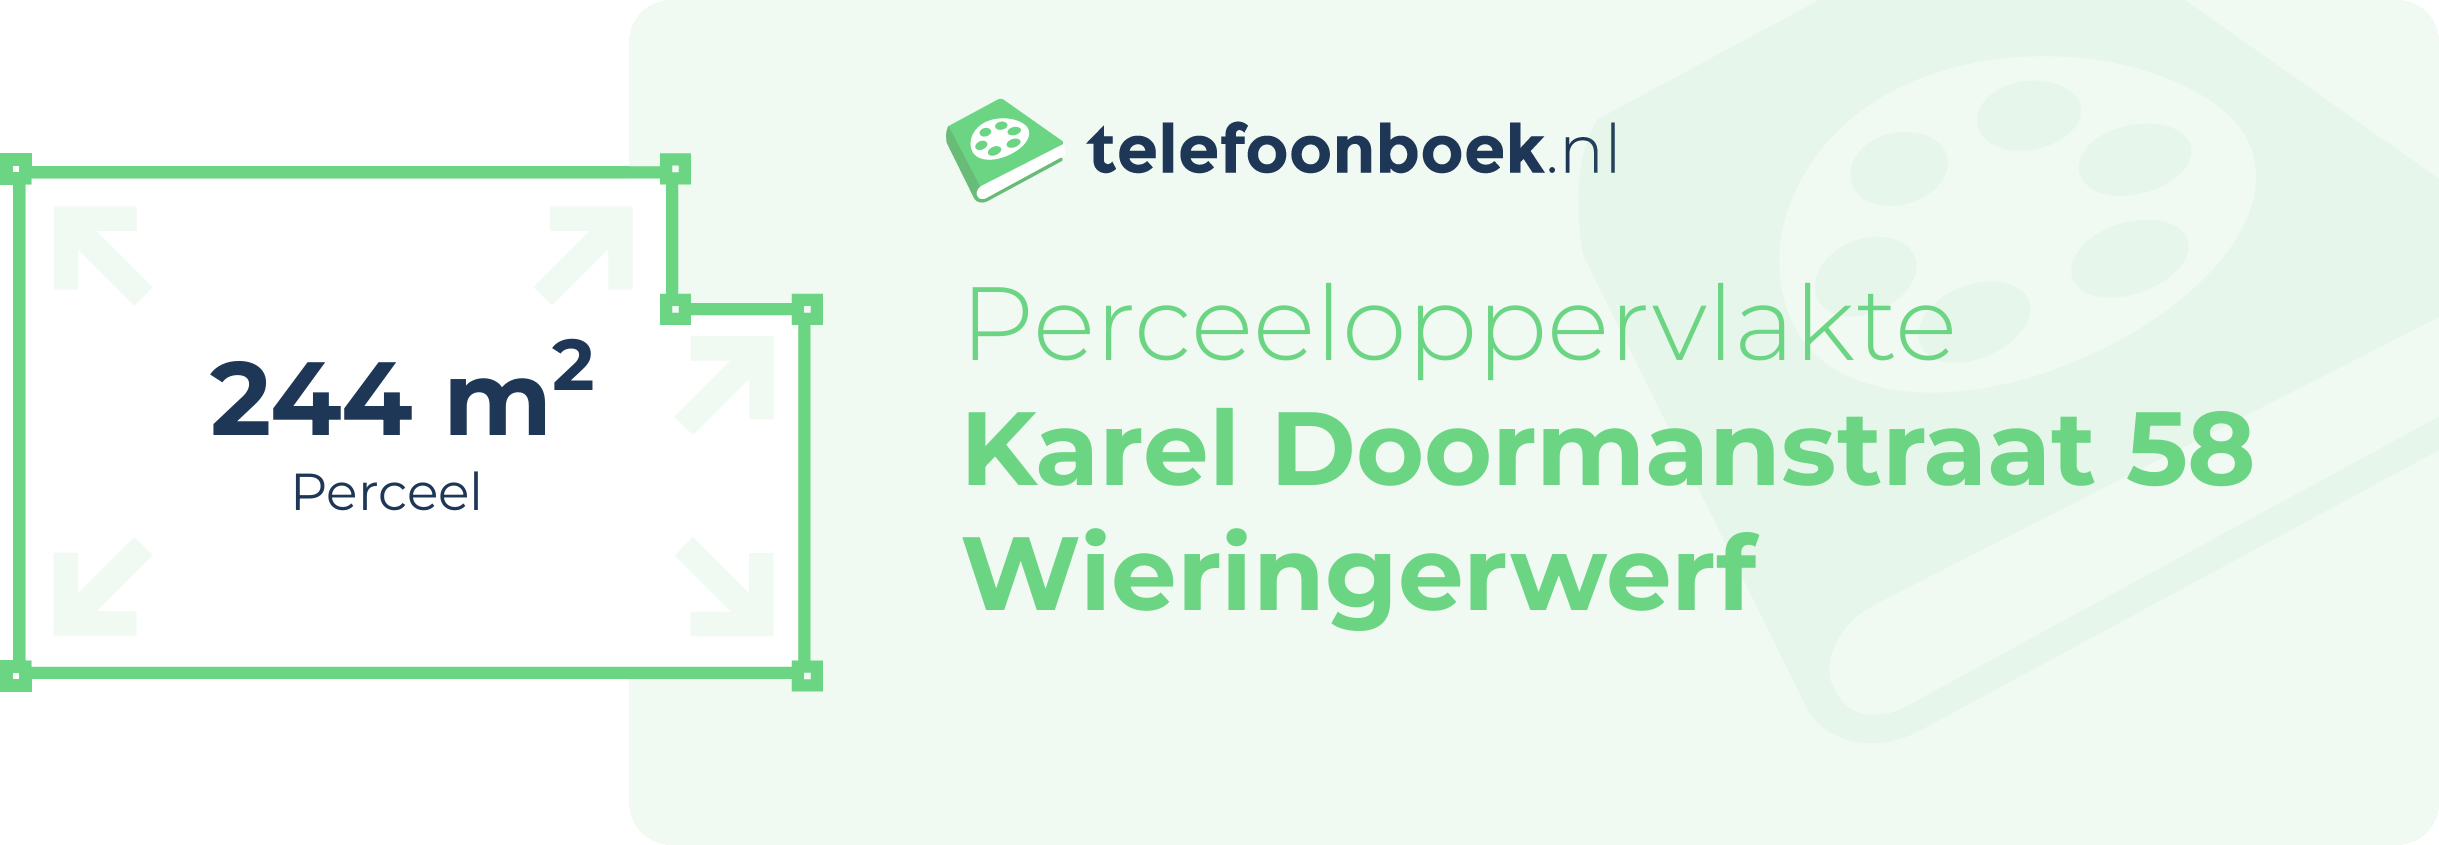 Perceeloppervlakte Karel Doormanstraat 58 Wieringerwerf